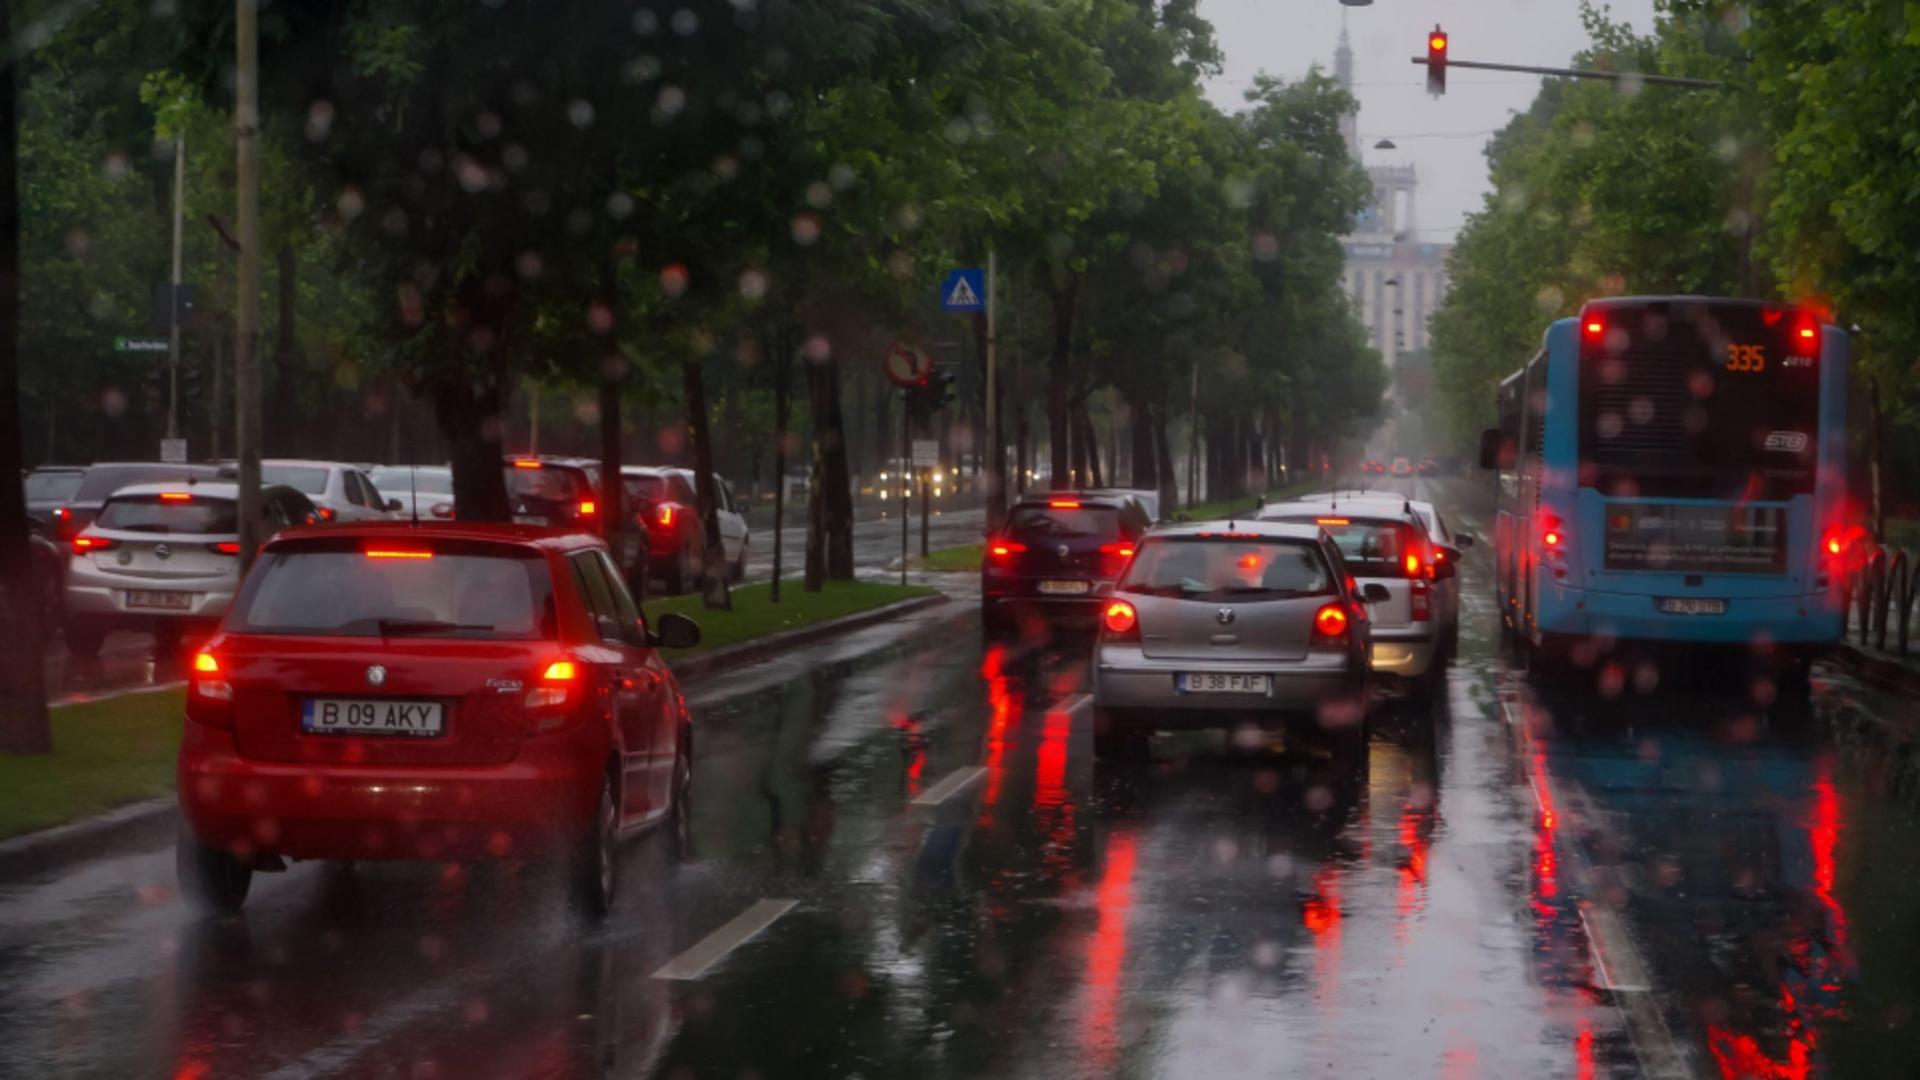 Ploaie București / Profimedia